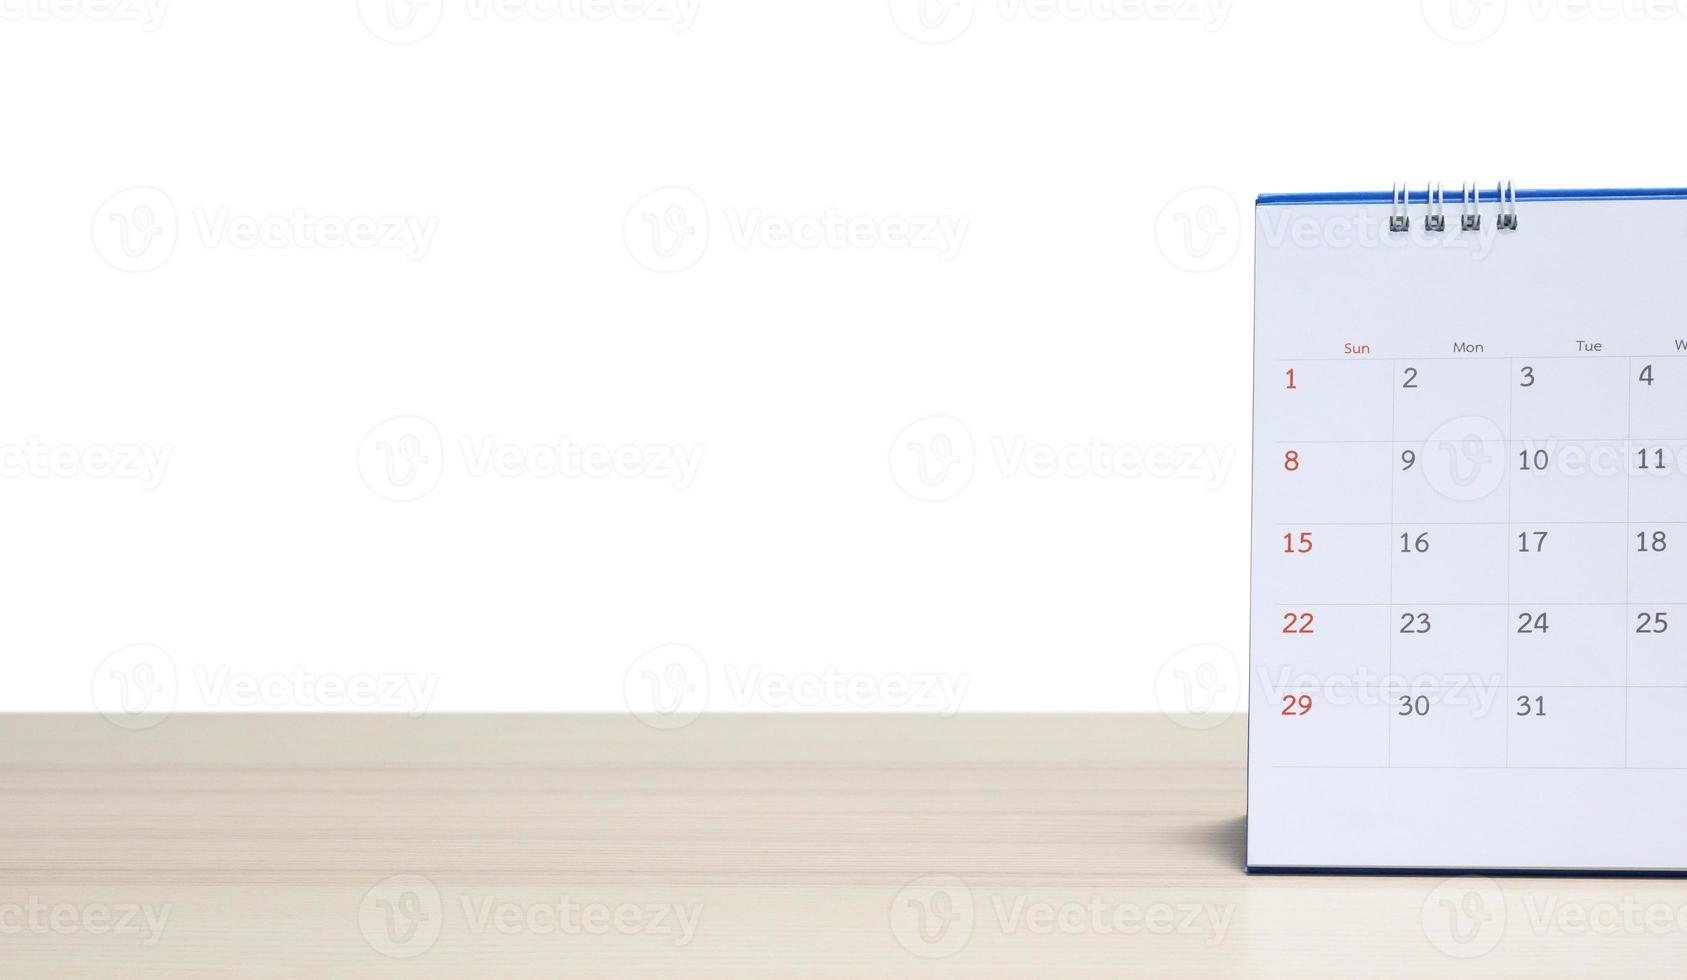 Calendario de escritorio blanco en la parte superior de la mesa de madera aislado sobre fondo blanco. foto